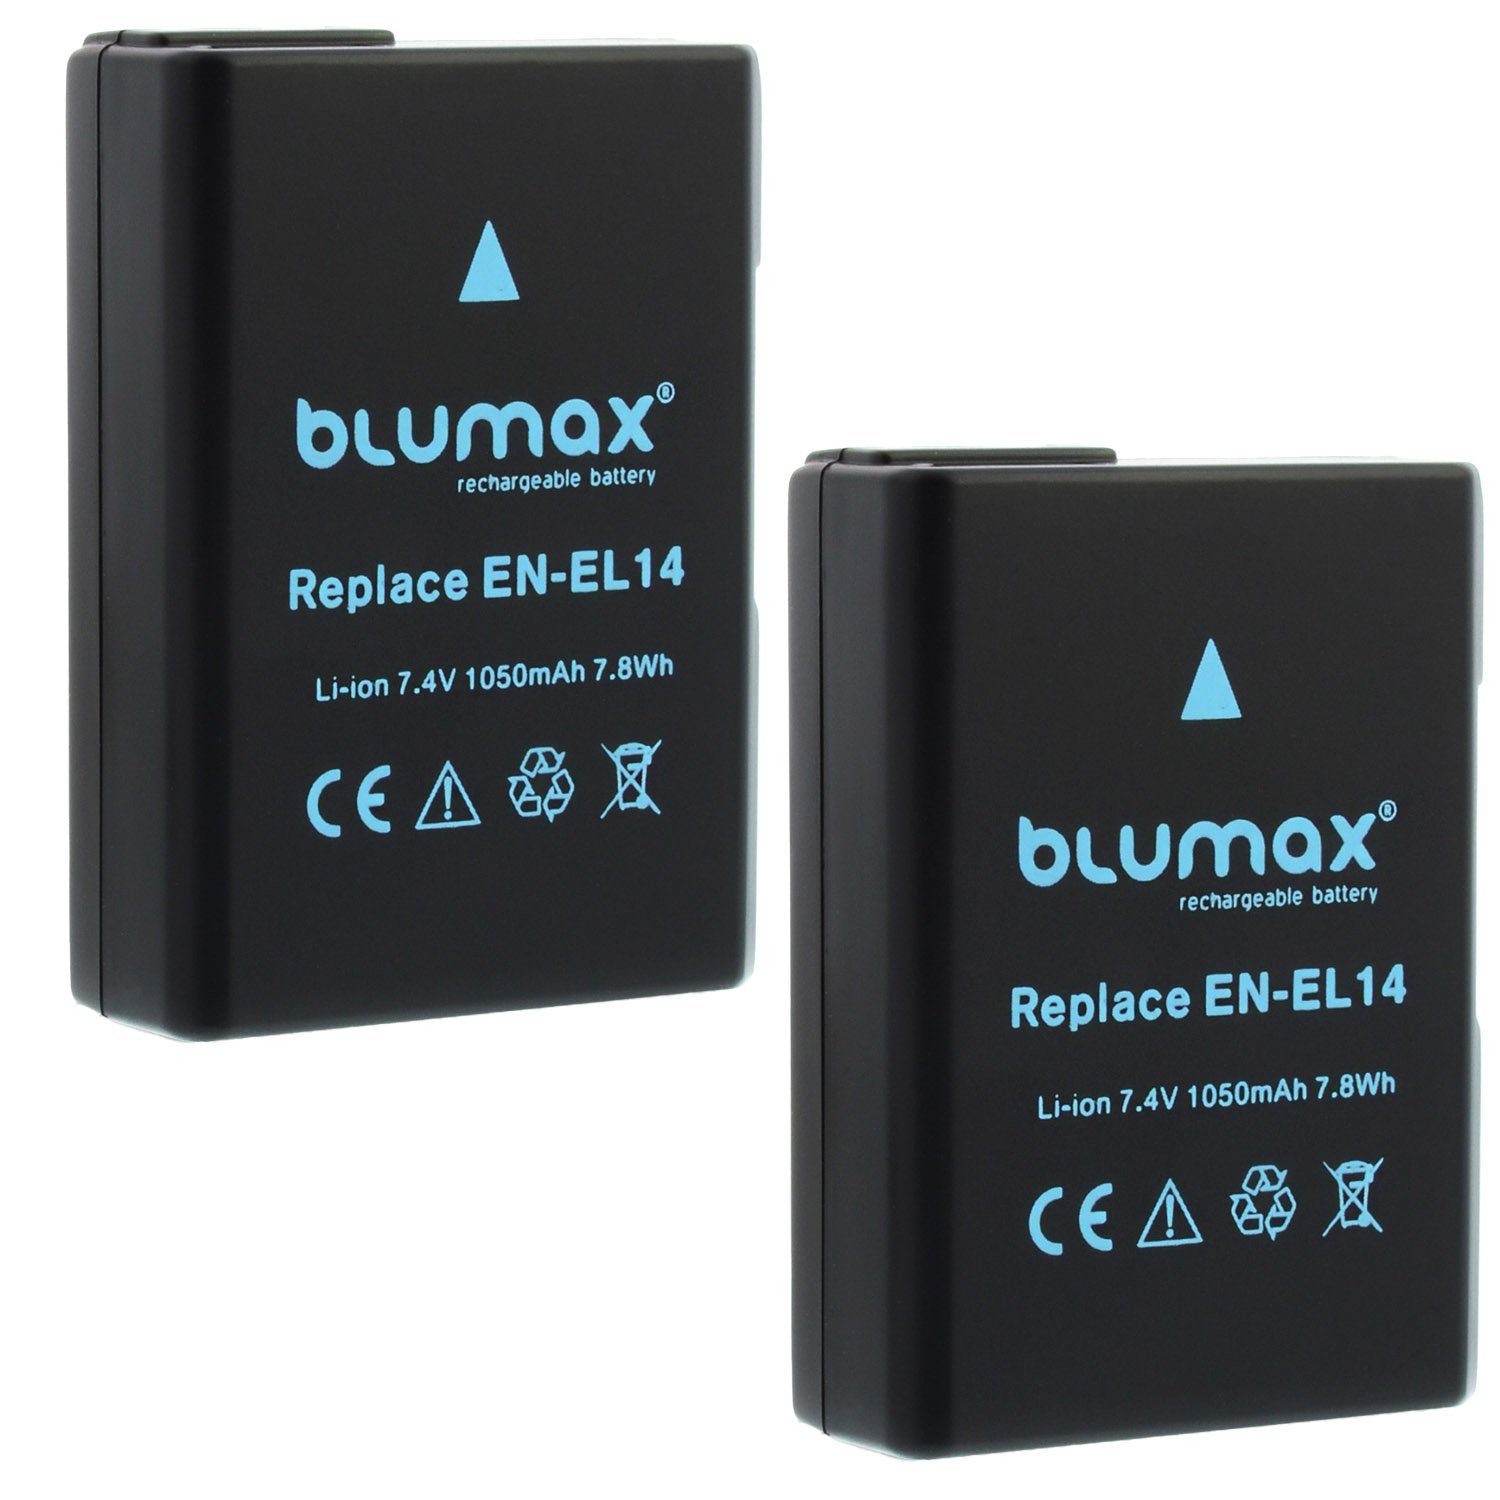 Blumax 2x D5300 Kamera-Akku P7800 1050 D3300 D5600 D5500 mAh EN-EL14